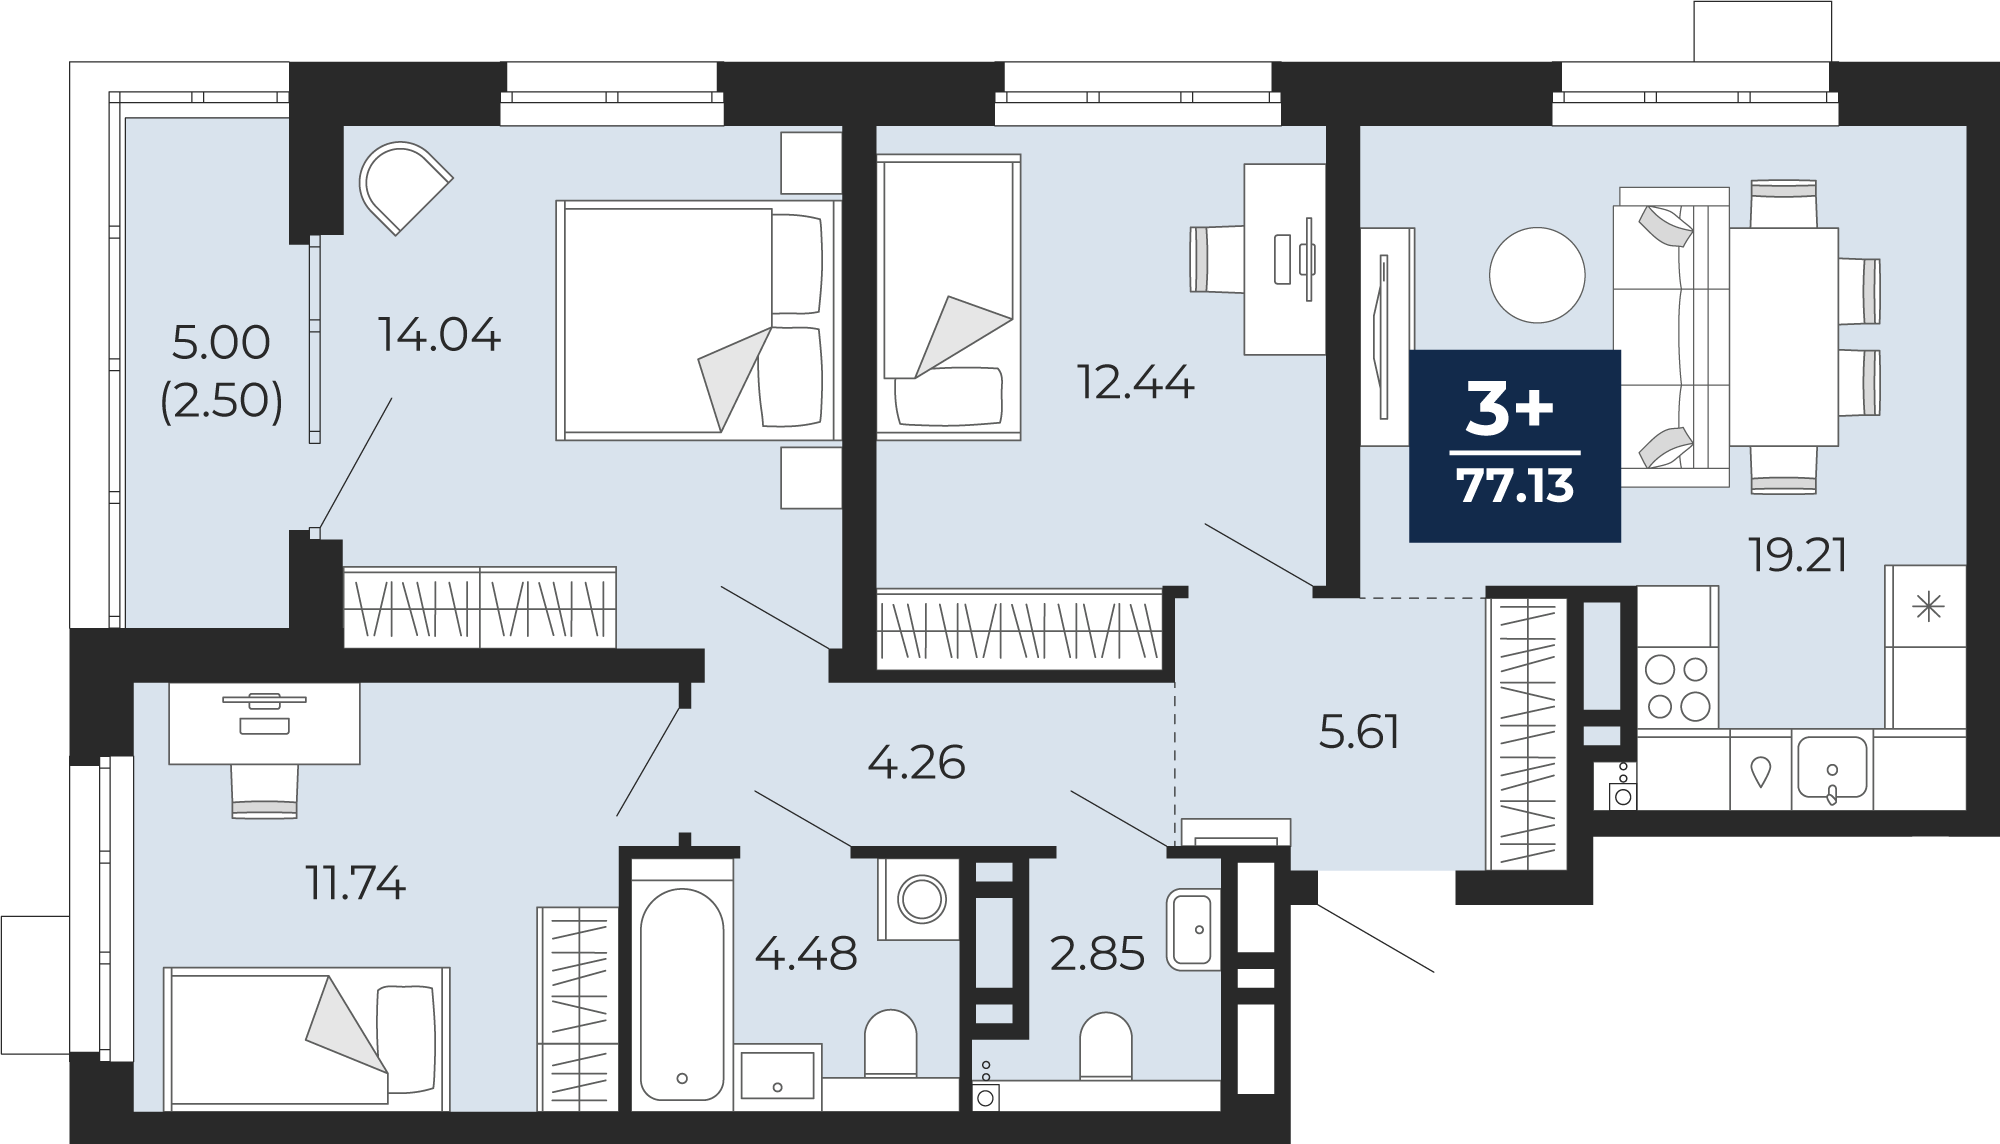 Квартира № 54, 3-комнатная, 77.13 кв. м, 8 этаж